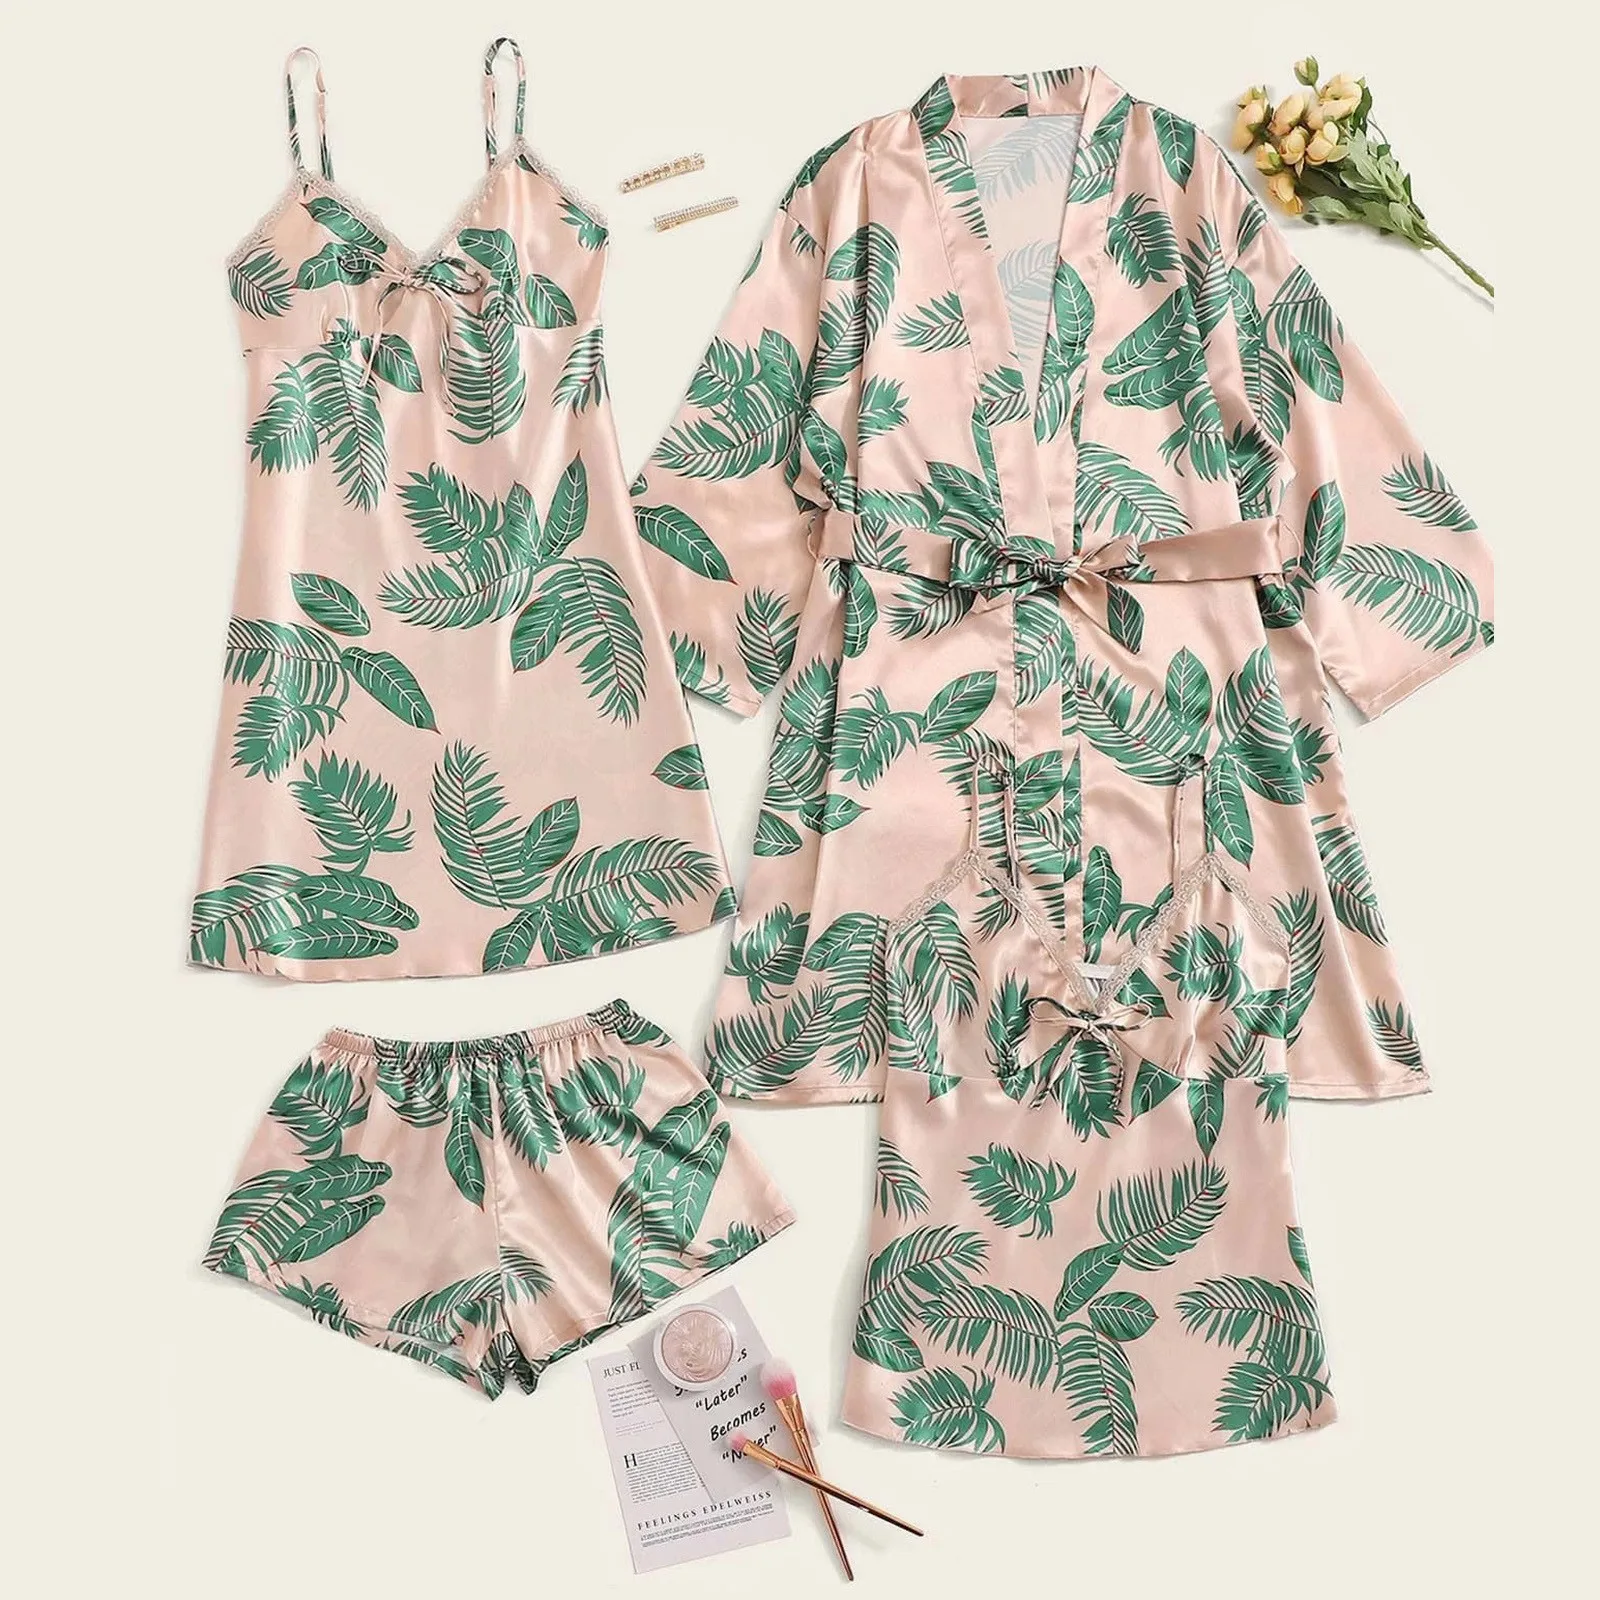 

Атласная Шелковая пижама с принтом листьев, 4 шт., женское кимоно, халаты, ночная рубашка, халат, повседневная одежда для сна, свадебная ночна...